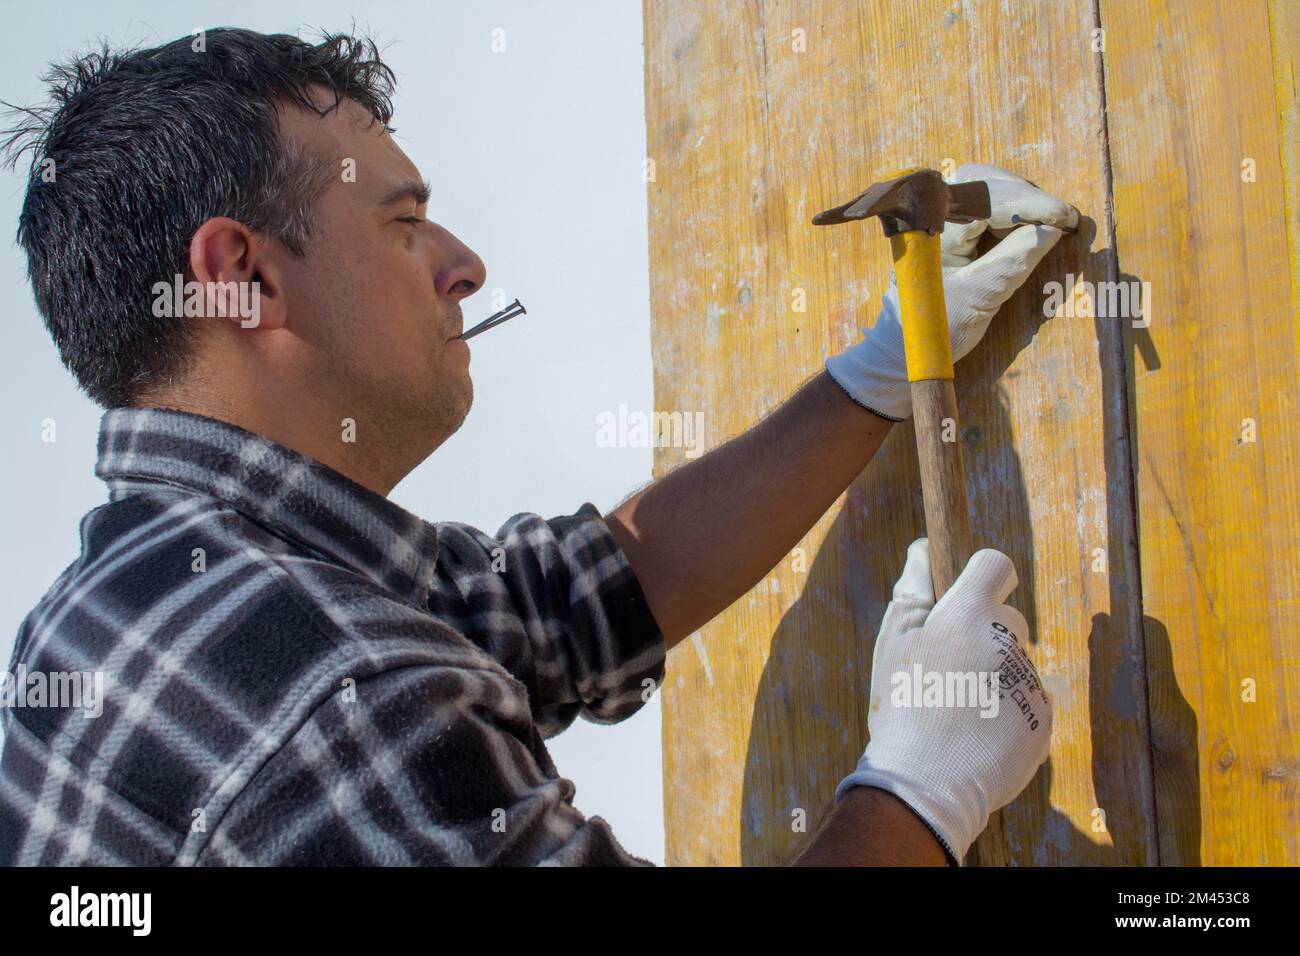 Albañil trabajando en un sitio de construcción mientras sostiene clavos entre sus labios y fija tablones de madera con un martillo. Foto de stock